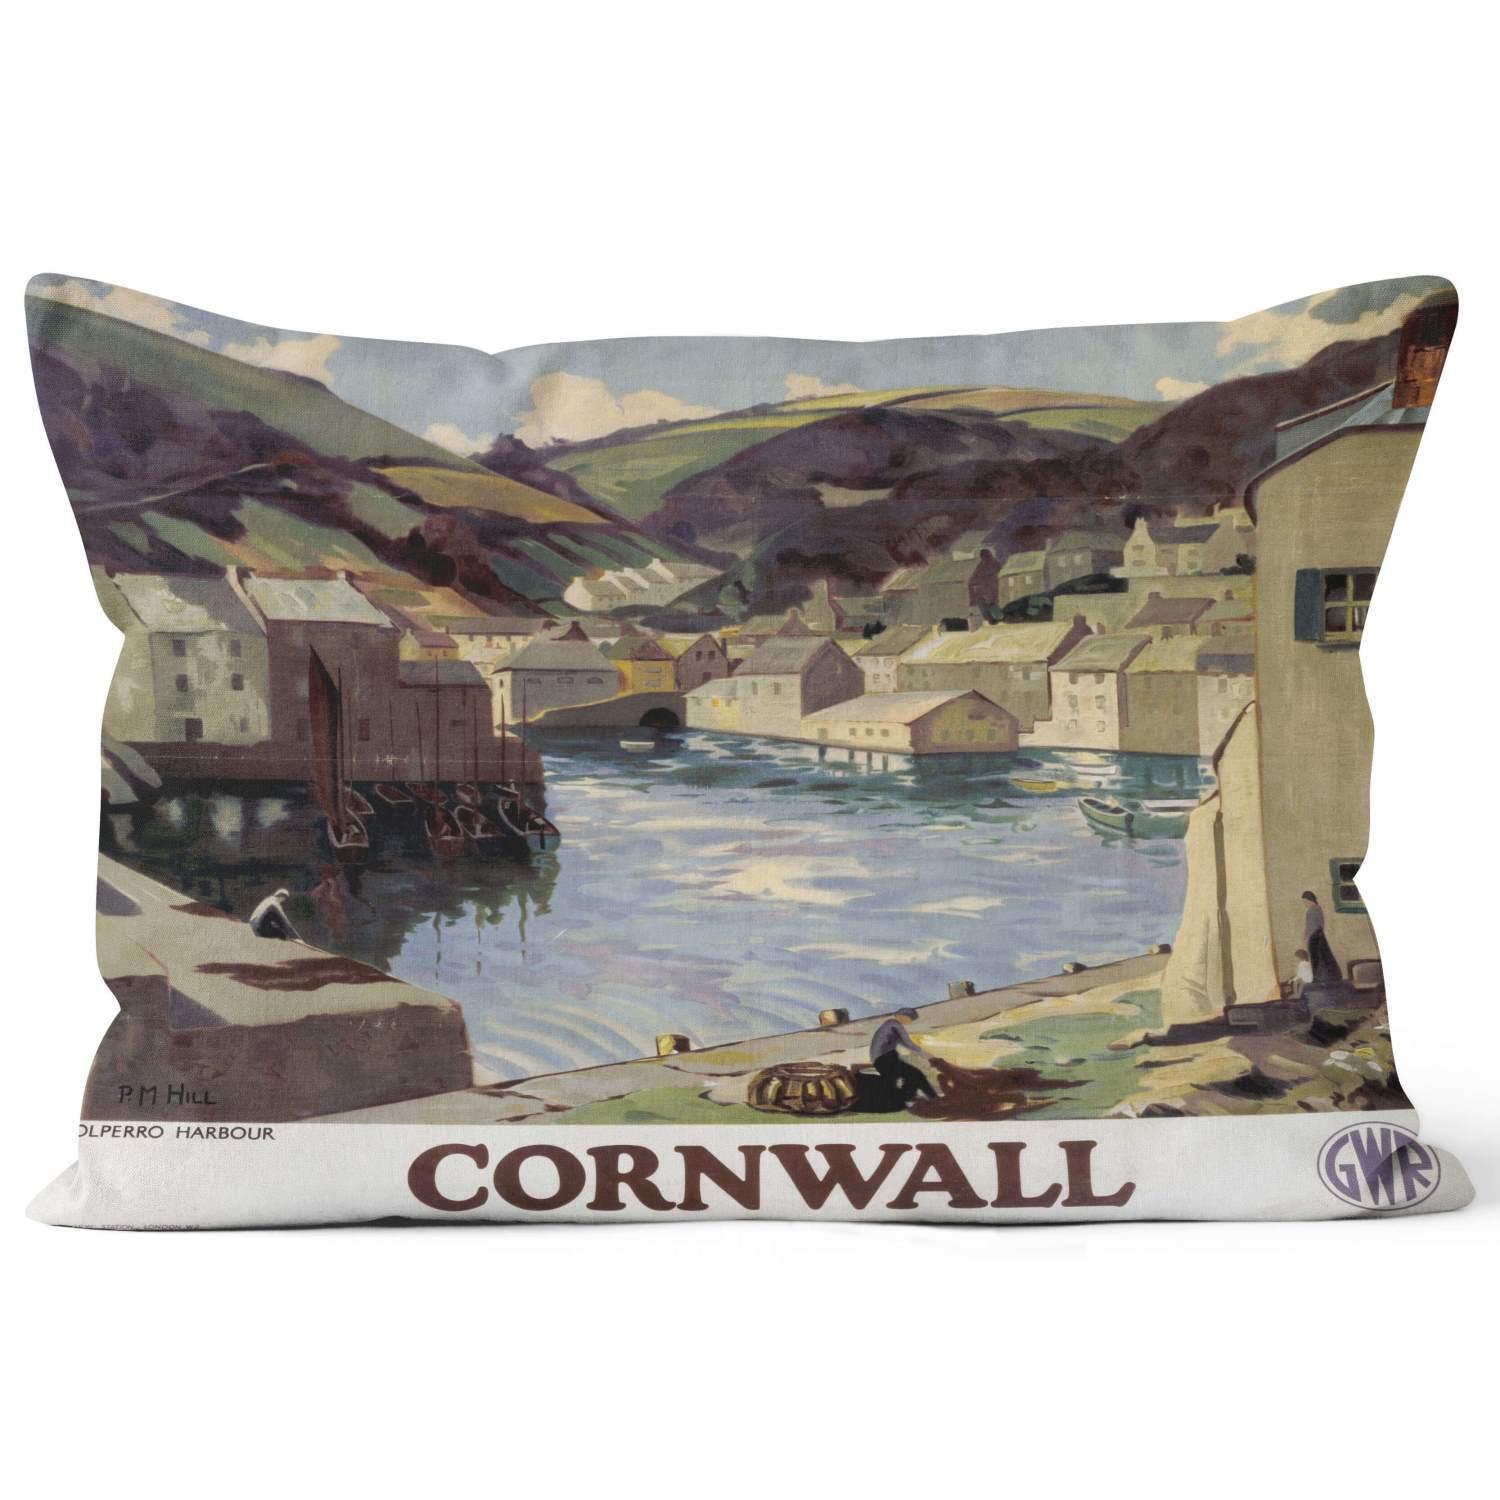 Polperro Harbour - National Railways Museum Cushion - Handmade Cushions UK - WeLoveCushions